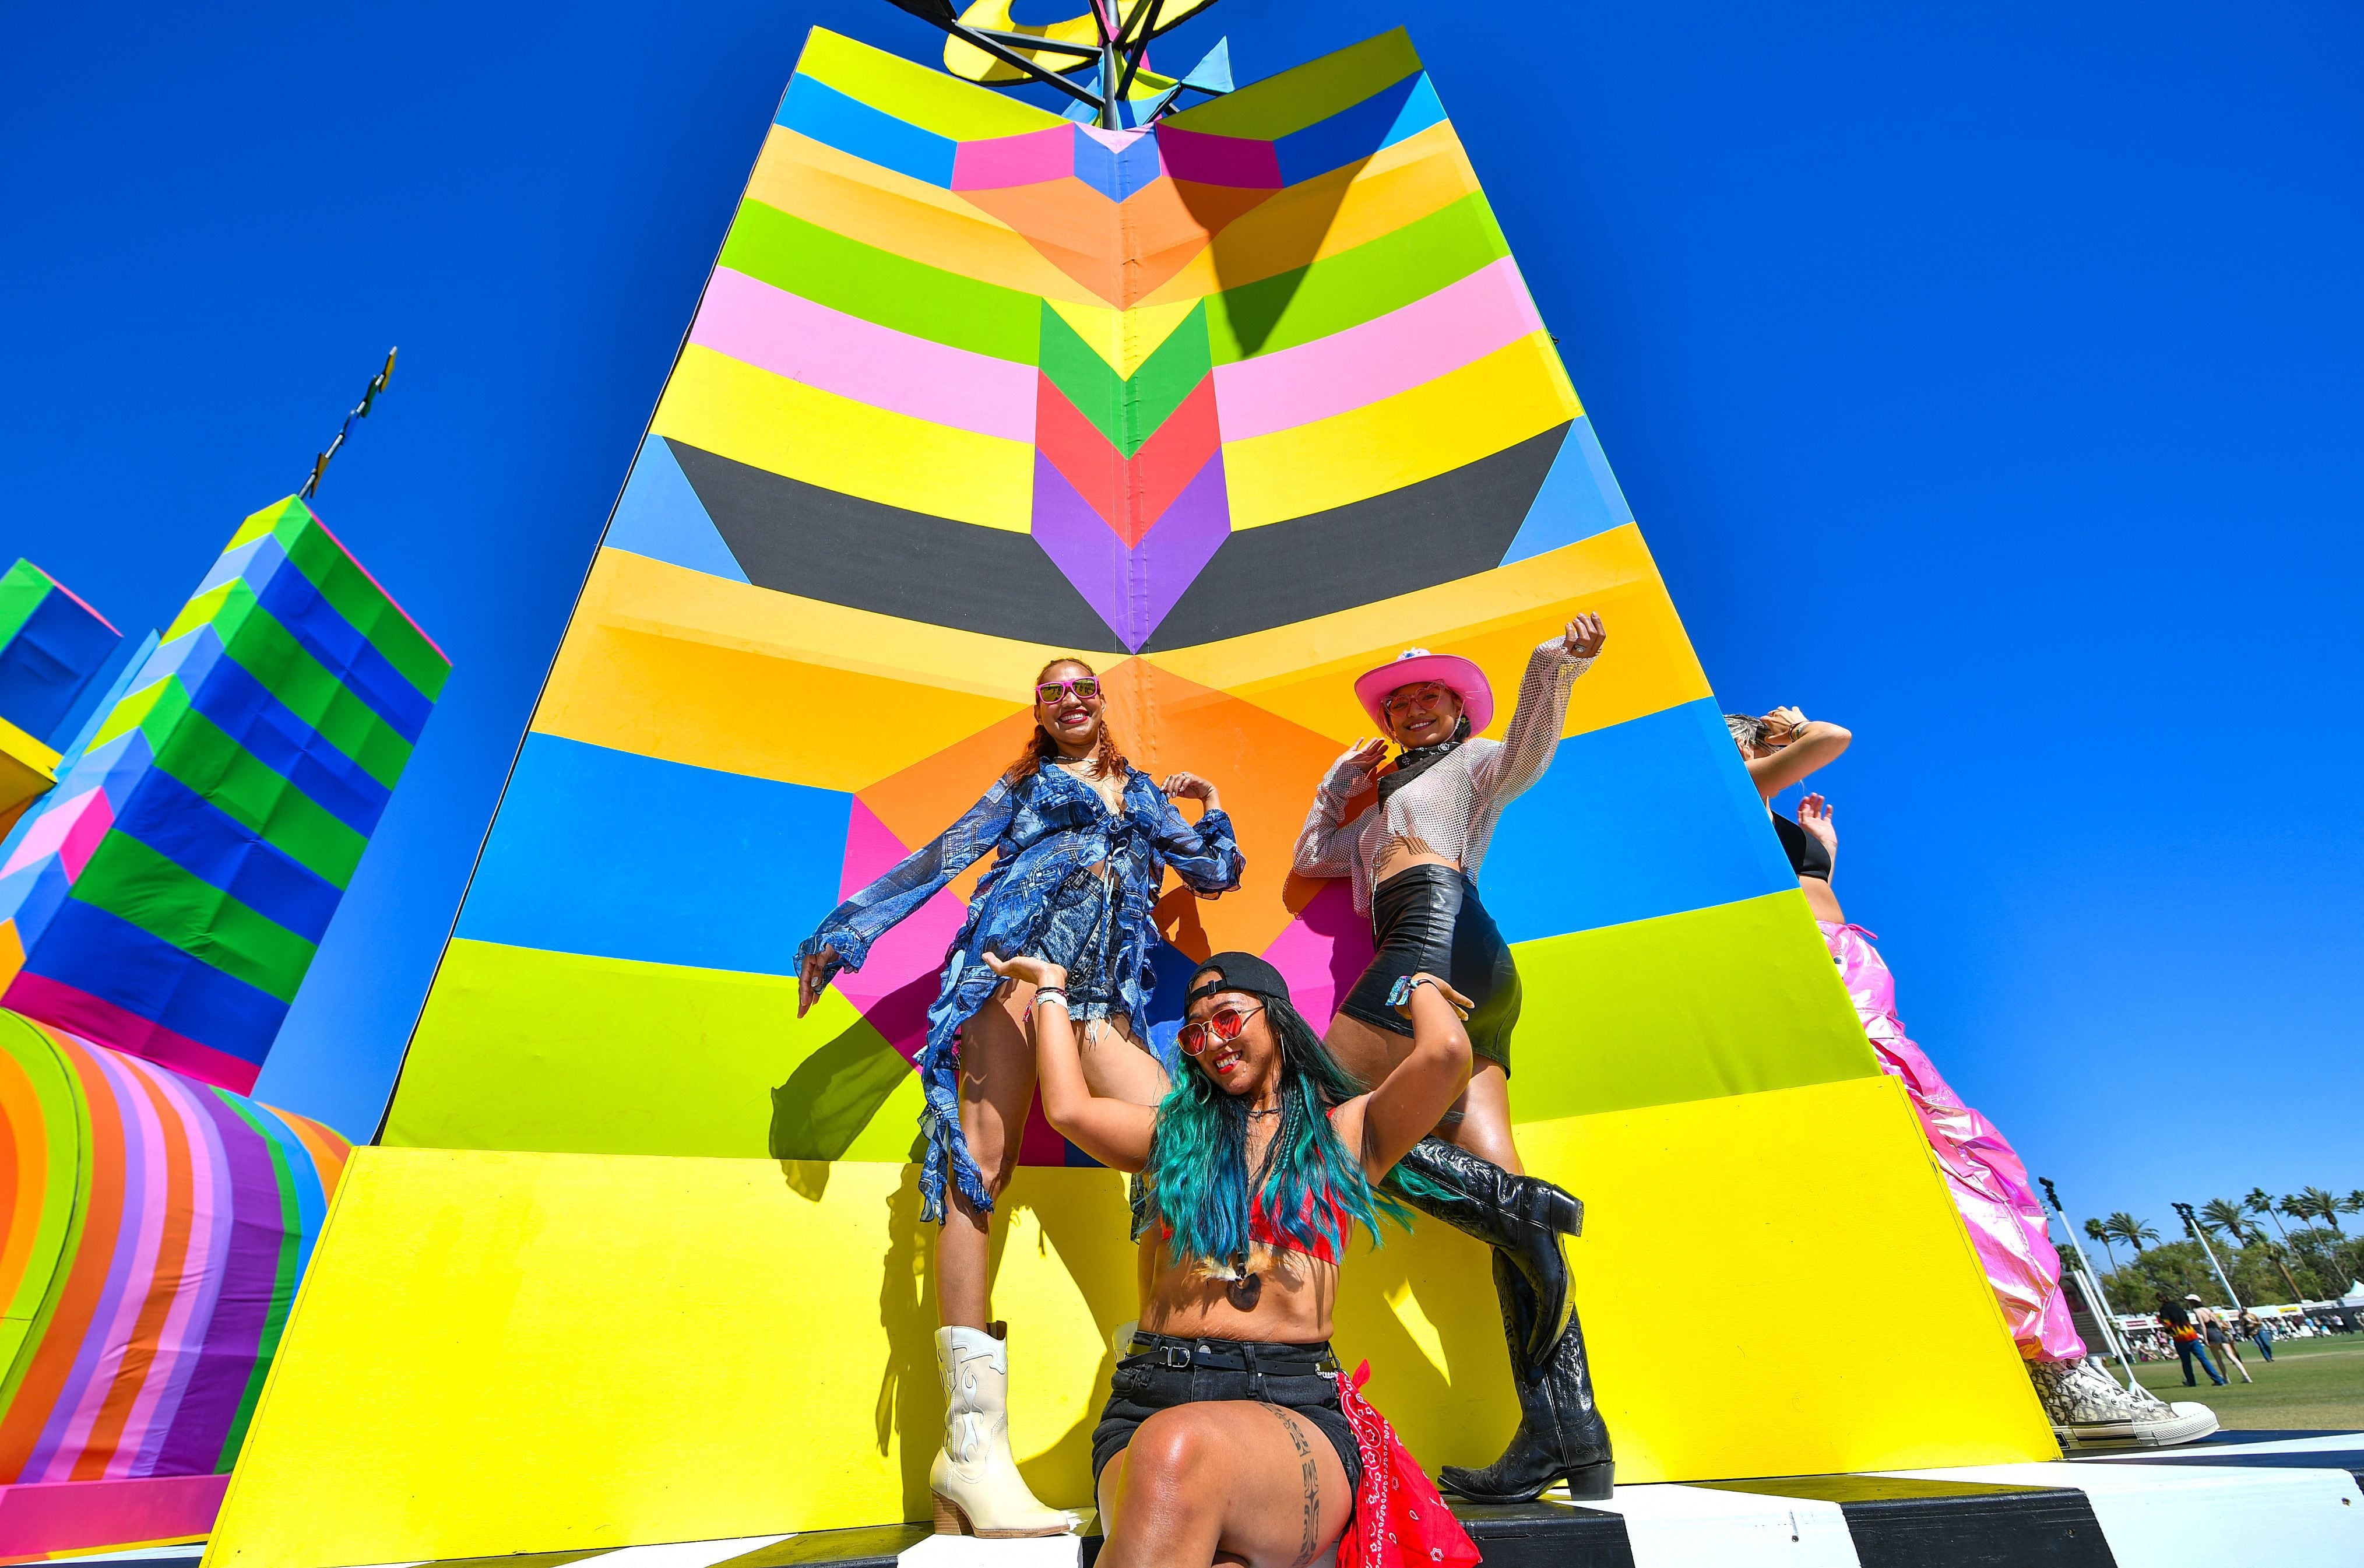 Los asistentes de Coachella suelen lucir atuendos llamativos y llenos de color, mostrando su estilo único mientras disfrutan de tres días de música internacional.